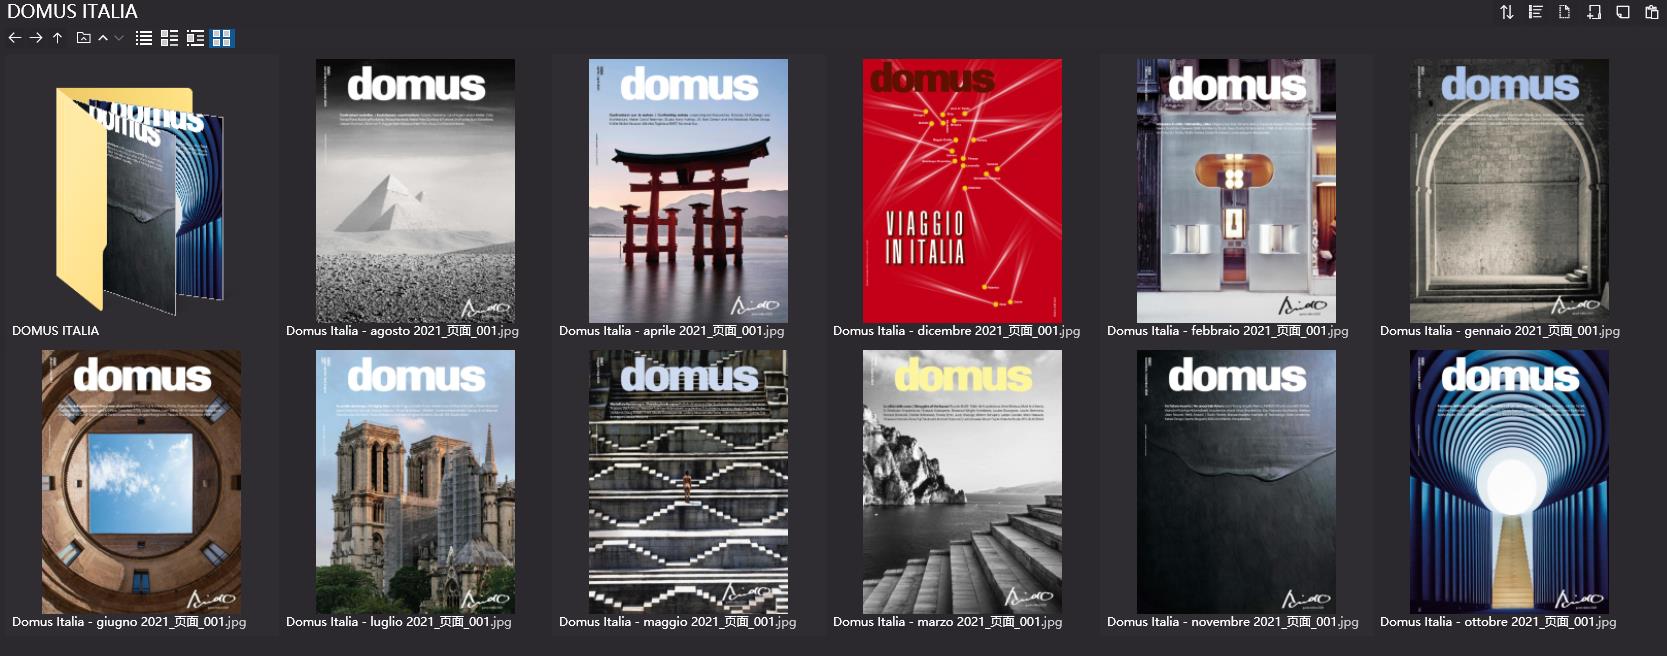 建築雜誌DOMUS ITALIA,建築、設計雜誌DOMUS ITALIA,建築設計雜誌,DOMUS設計雜誌,DOMUS設計電子雜誌,雜誌下載,DOMUS雜誌合集